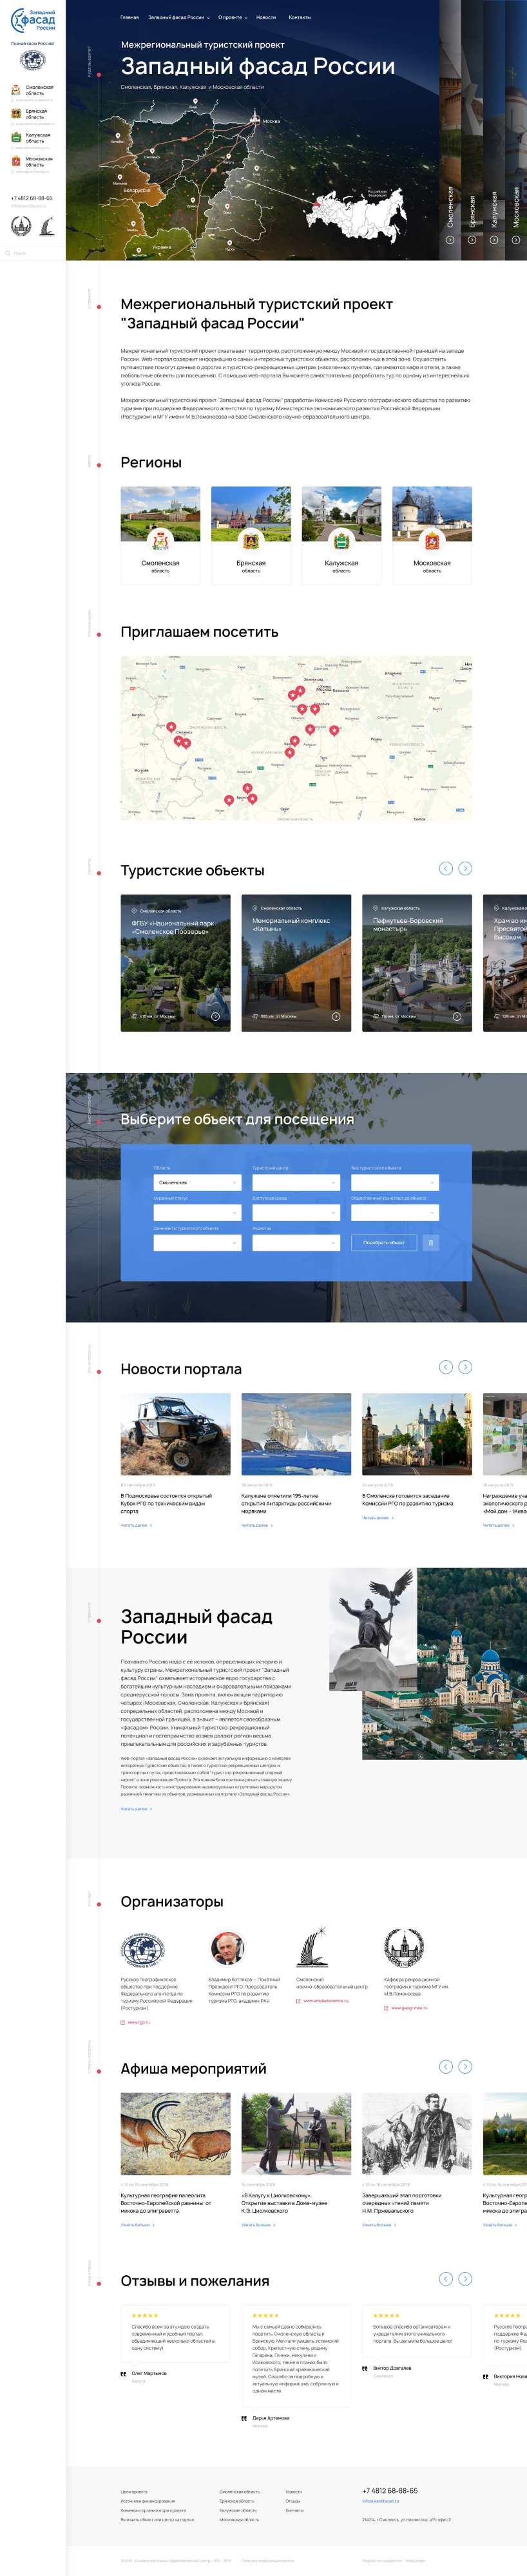 Разработка сайта для проекта Западный фасад России